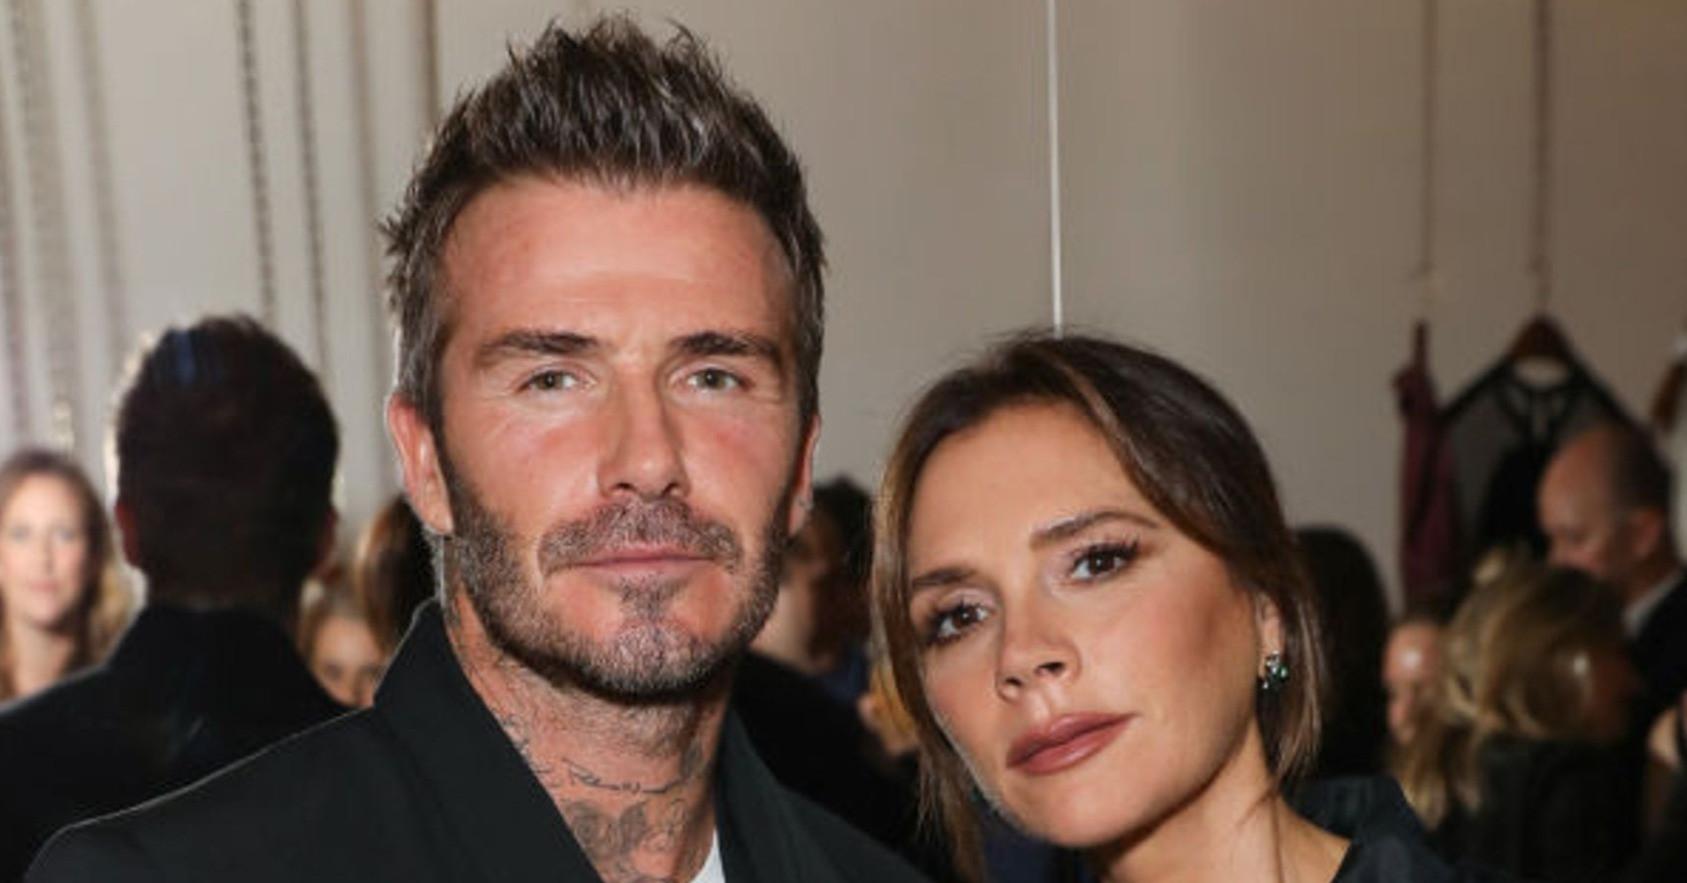 Vợ chồng David Beckham bị người dân kiện: "Họ chẳng thèm quan tâm đến cộng đồng"